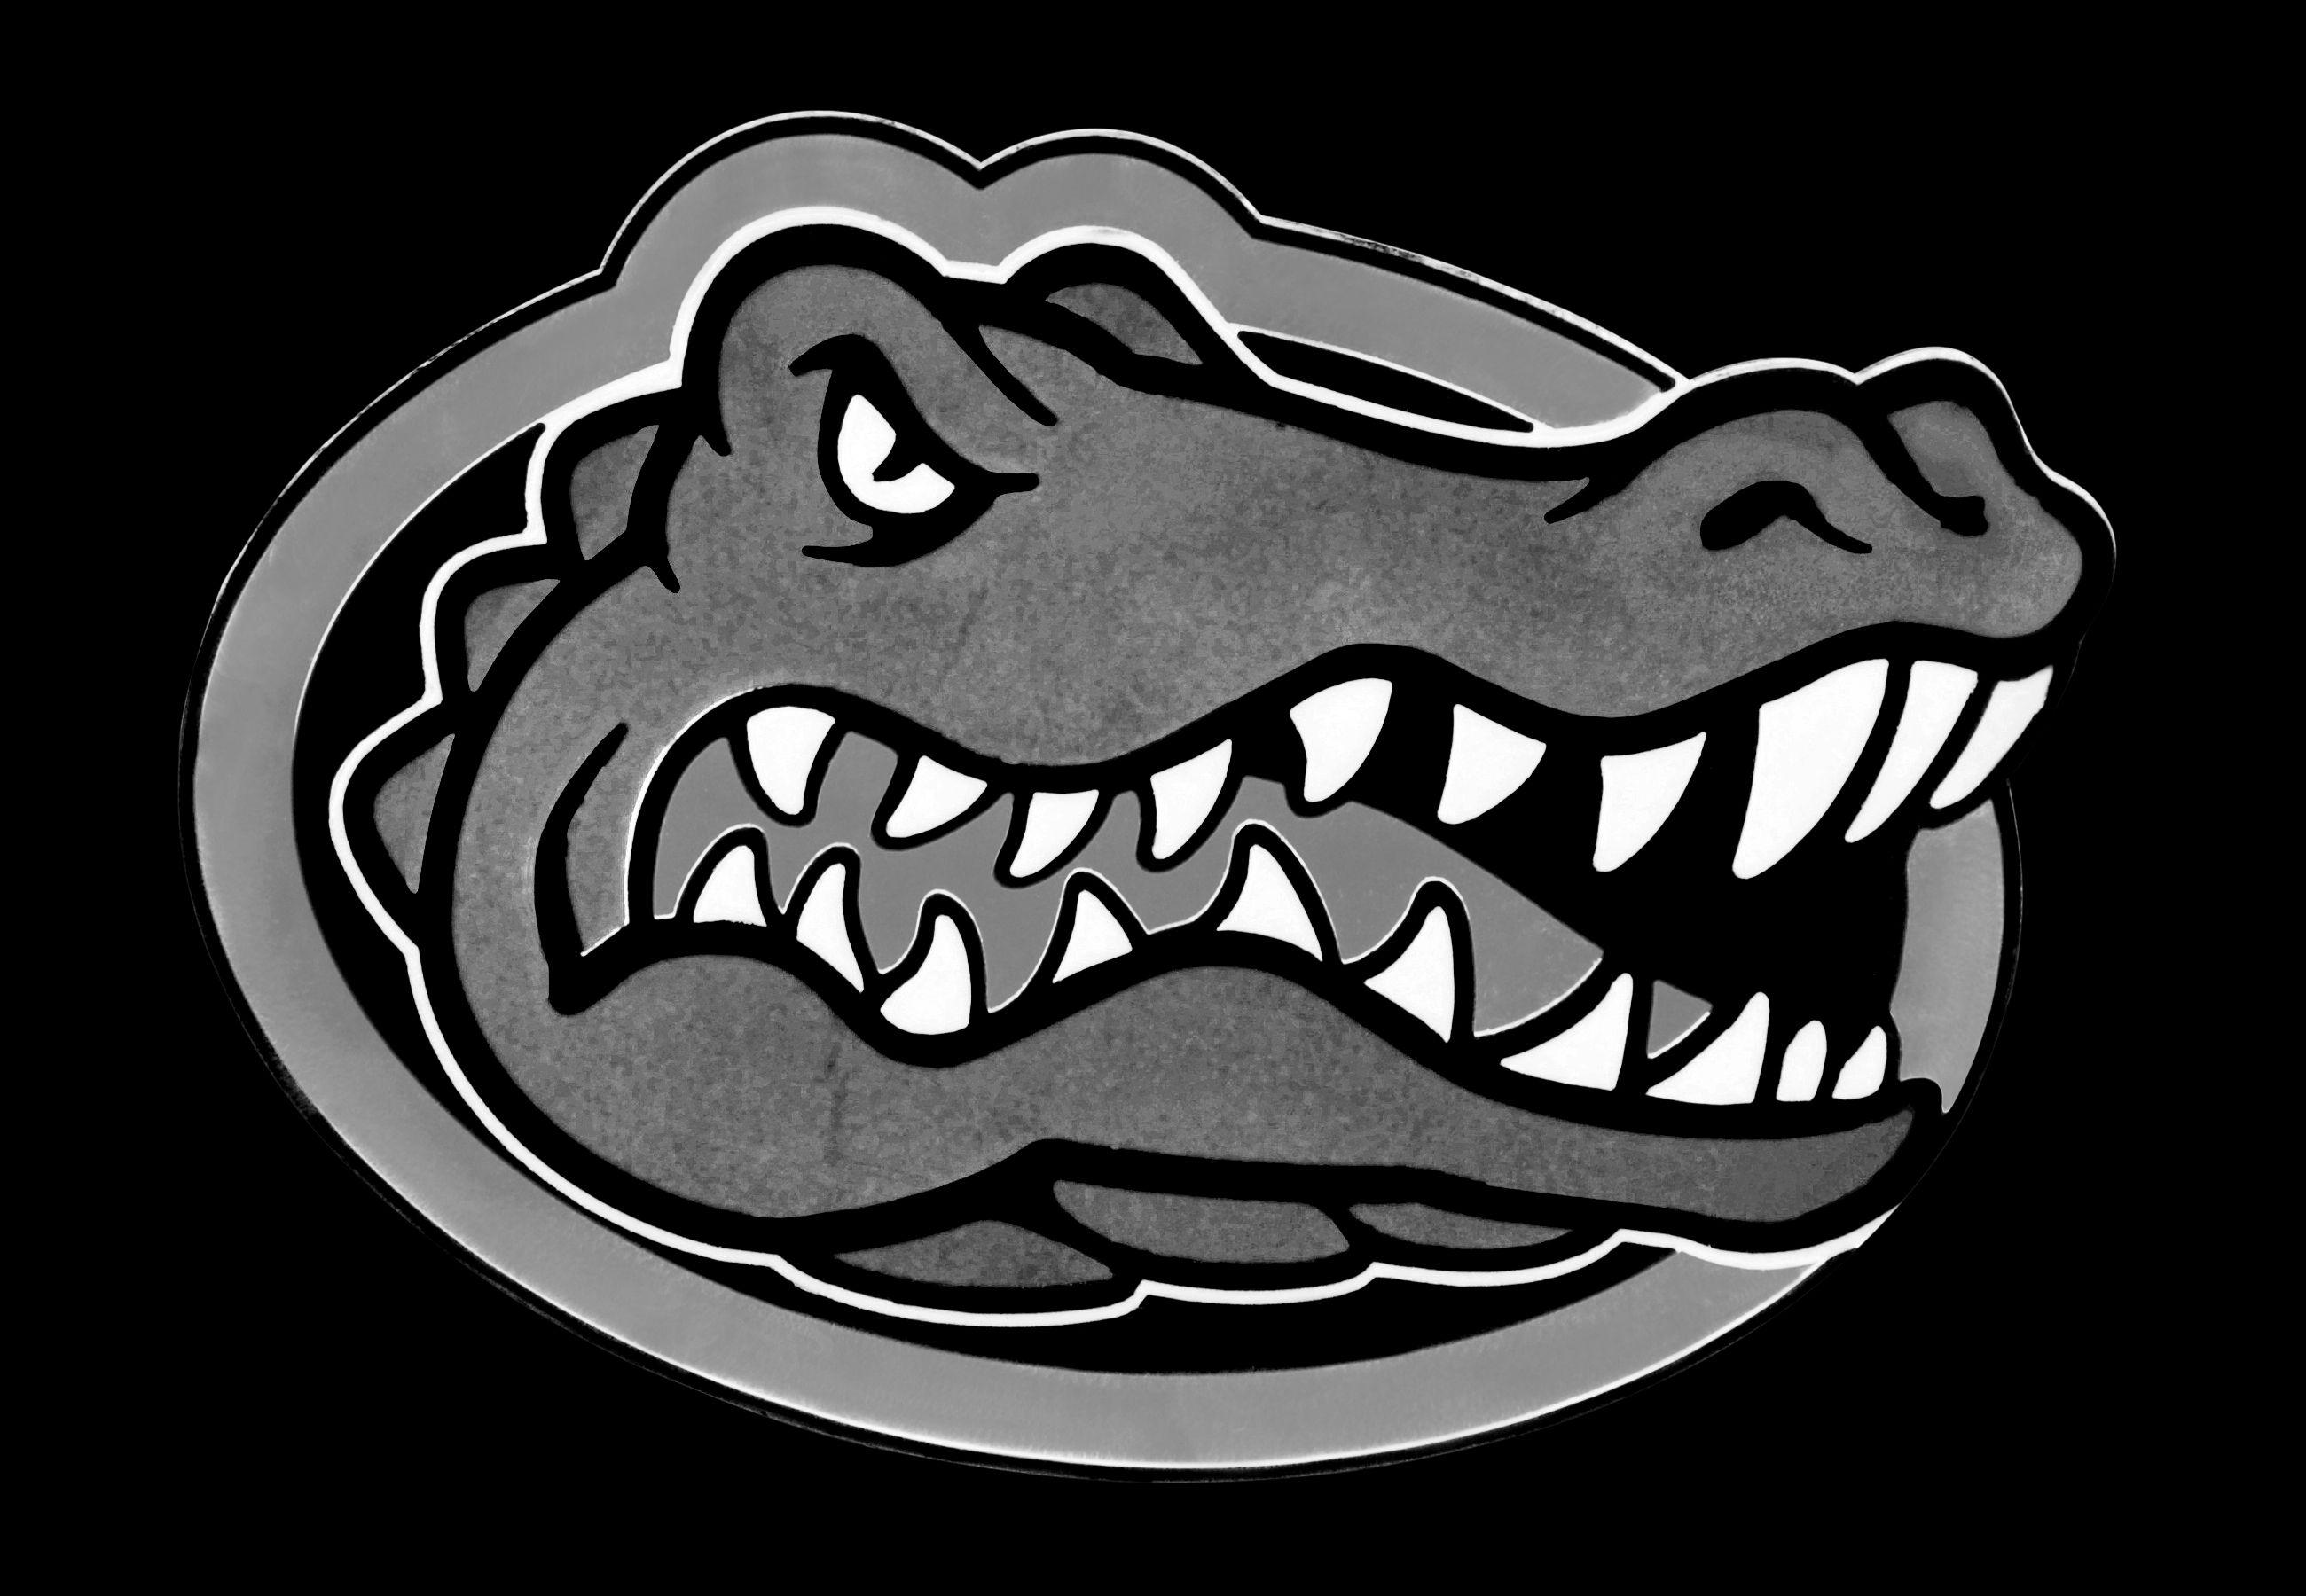 Black and White Gator Logo - Florida Gators Logo, Florida Gators Symbol, Meaning, History and ...